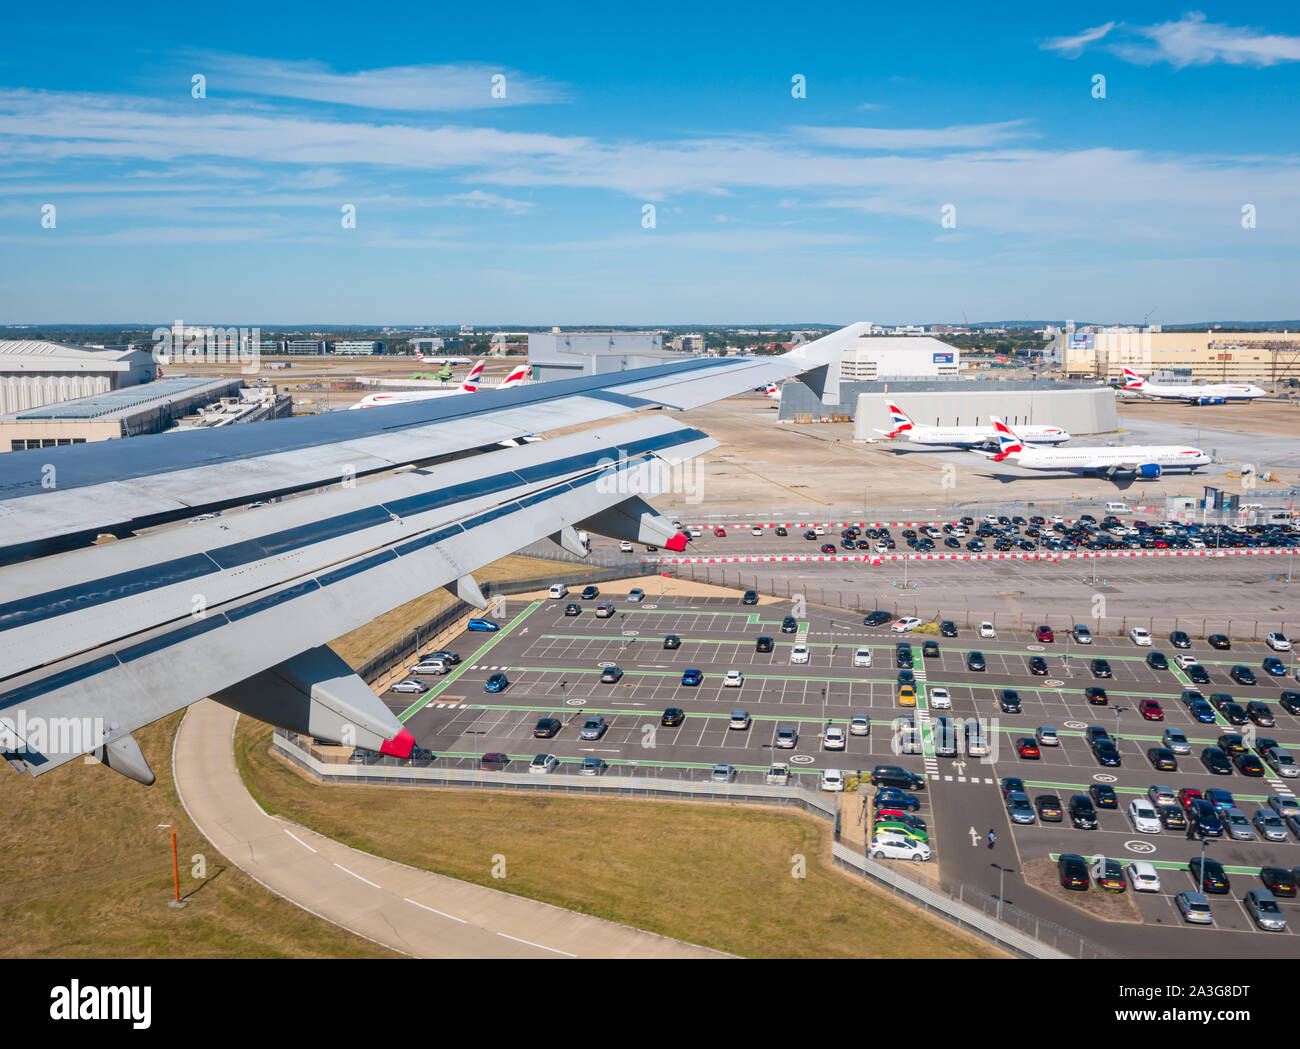 Vue depuis la fenêtre de l'avion plus de parking et hangars s en approche sur l'aéroport de Heathrow, Londres, Angleterre, Royaume-Uni Banque D'Images